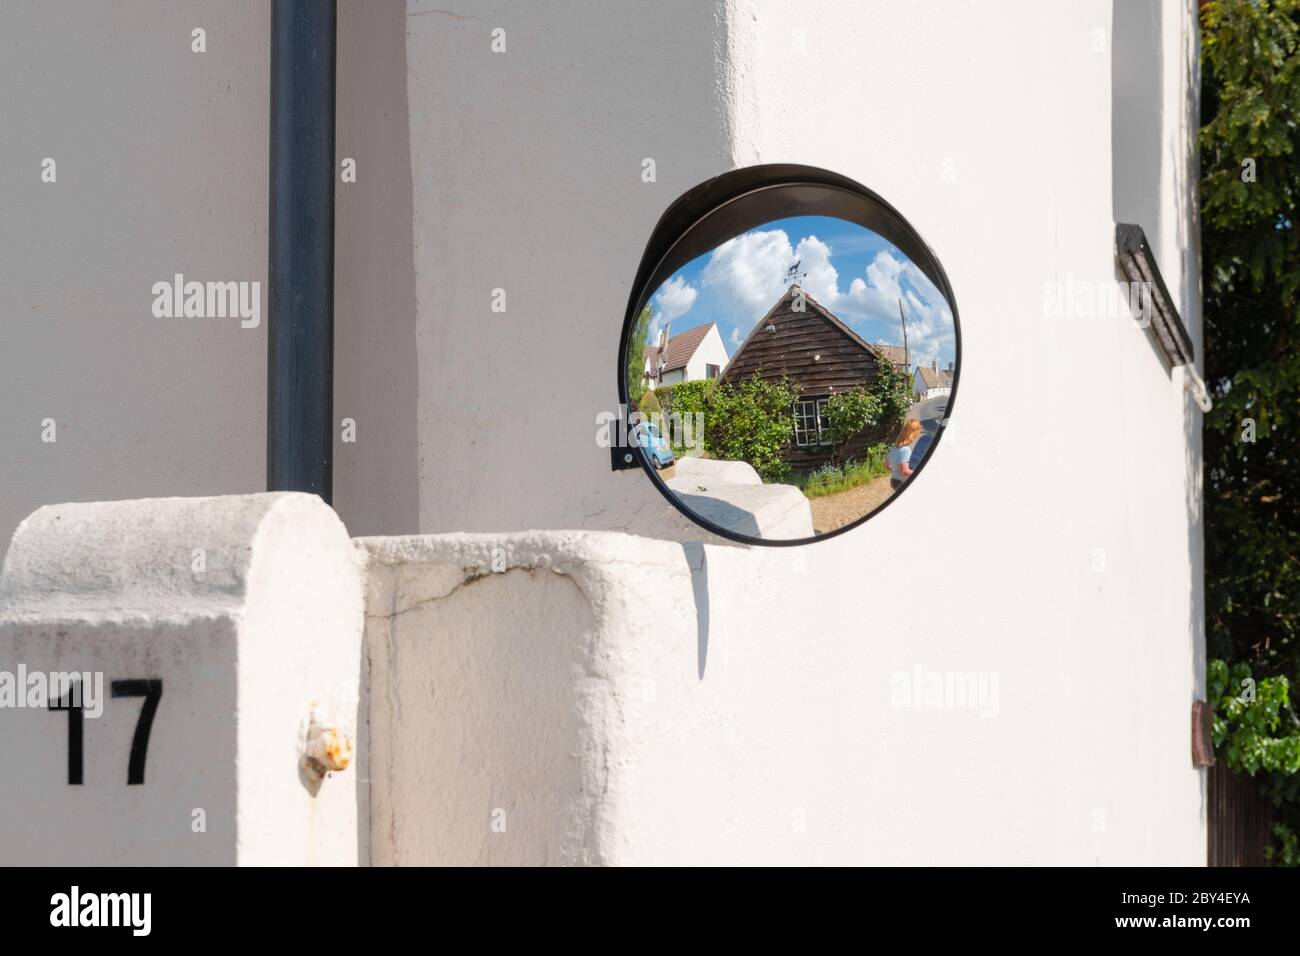 Neu installierte toter Spot-Spiegel am Eingang eines Hauses angebracht.  Zeigt die Reflexion von Antrieb und Garage Stockfotografie - Alamy